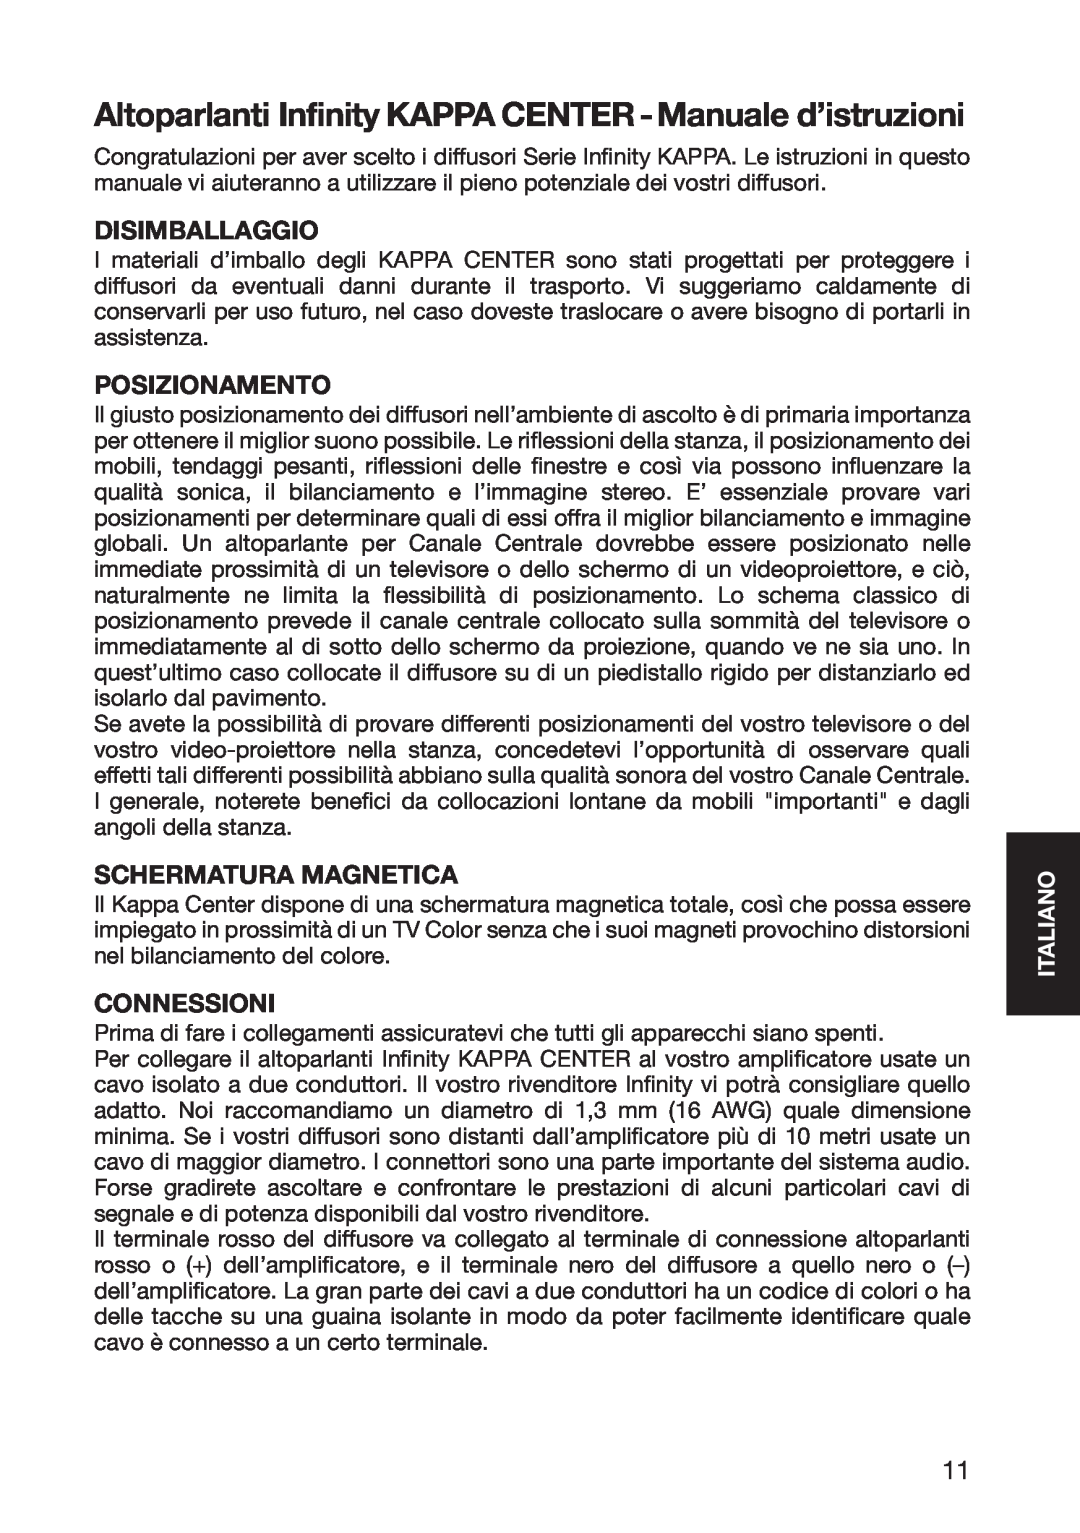 Infinity 10926 instruction manual Disimballaggio, Posizionamento, Schermatura Magnetica, Connessioni, Italiano 